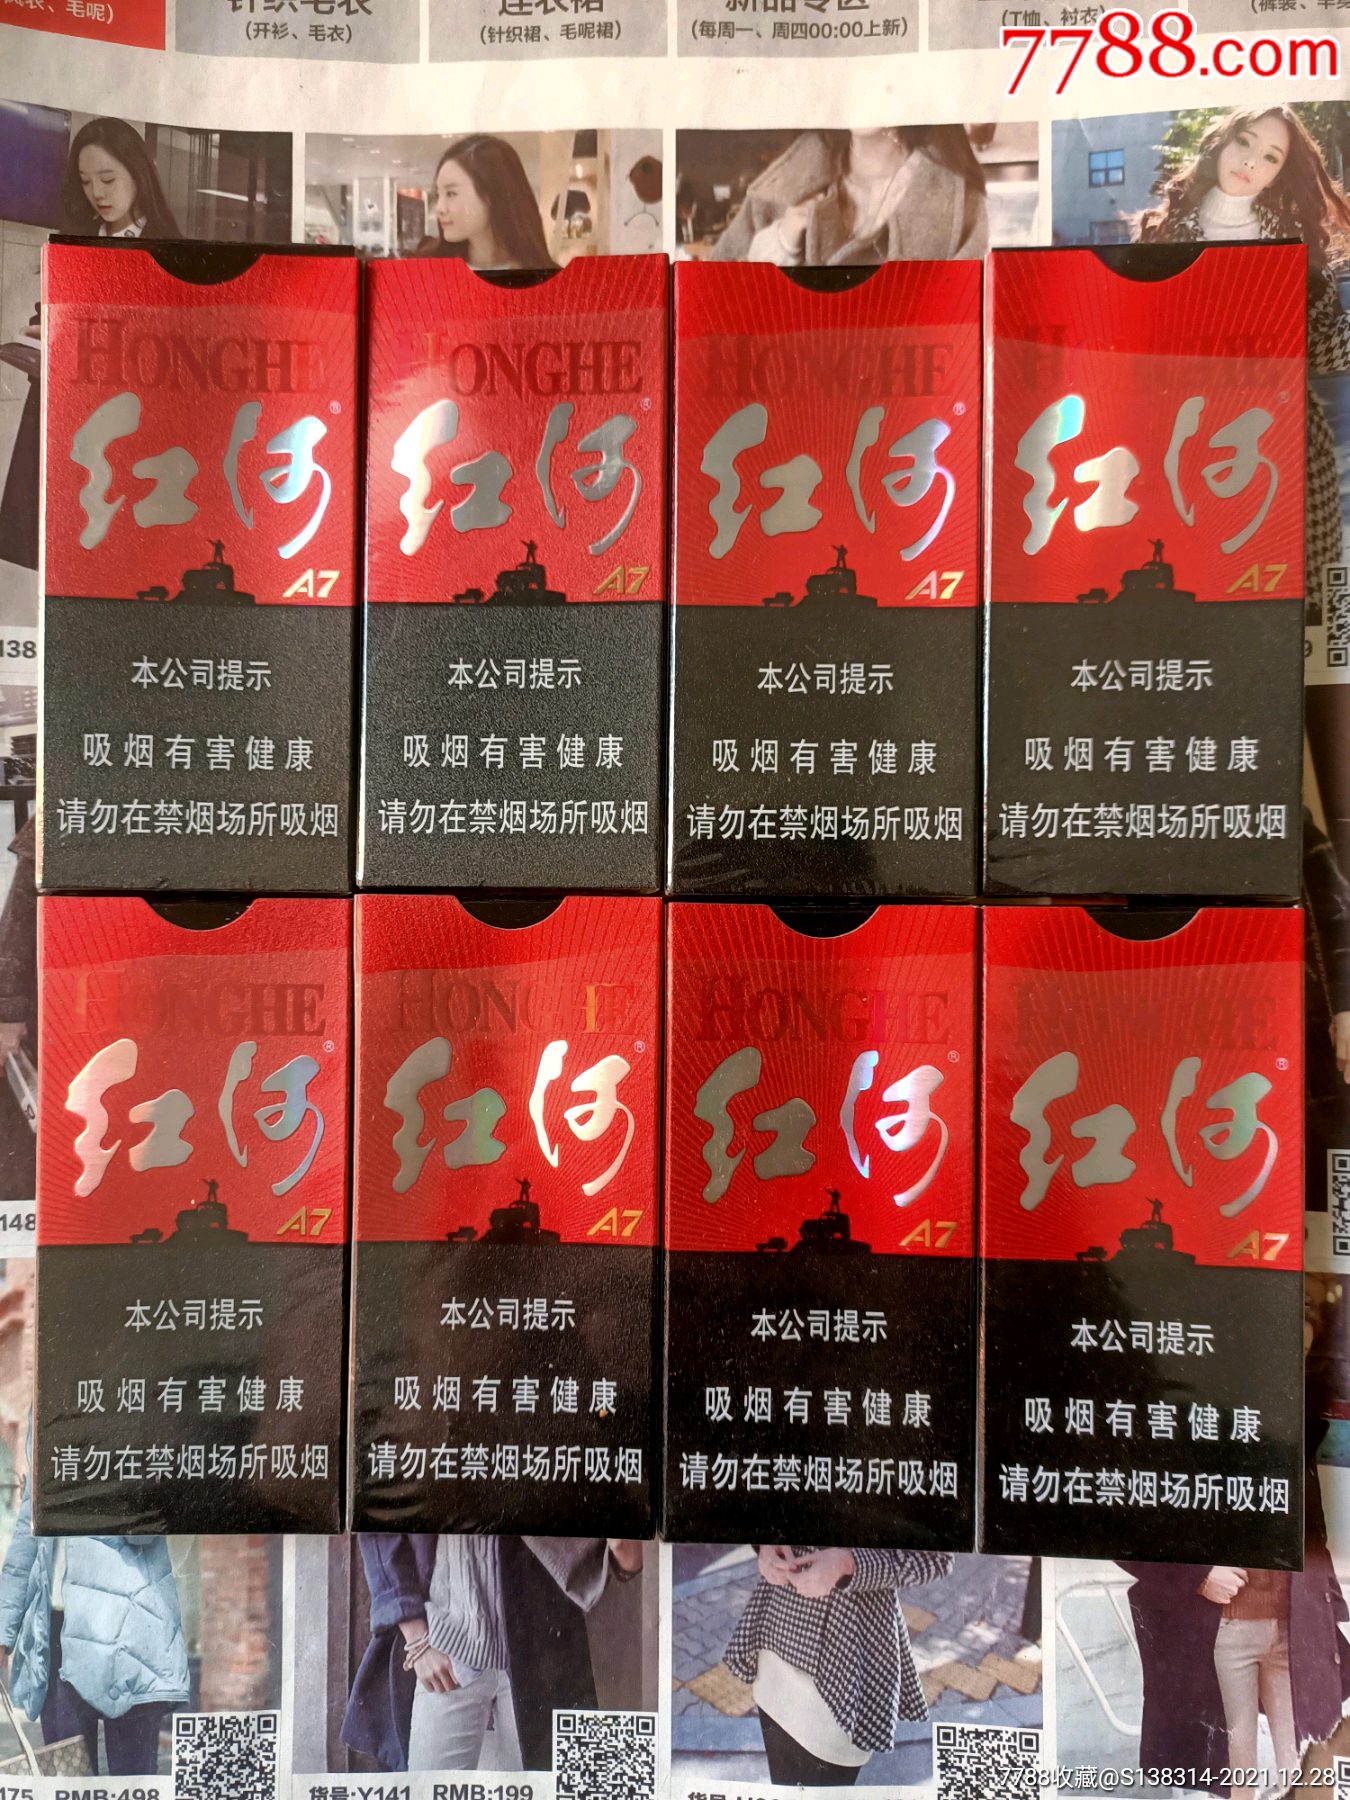 红河香烟a7价格图片